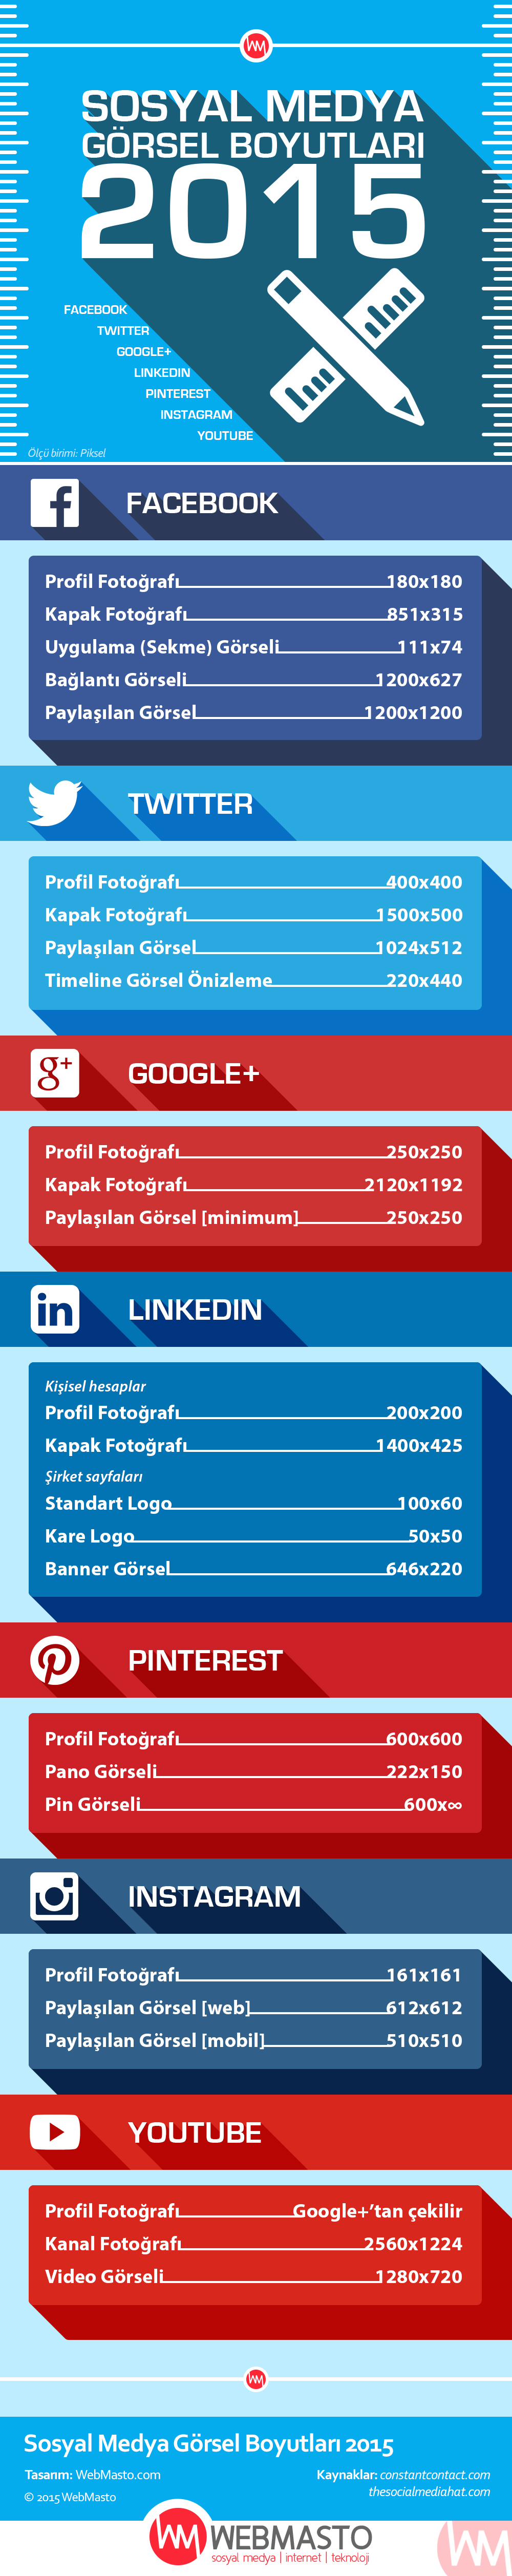 Sosyal Medya Görsel Boyutları 2015 (WebMasto İnfografik)